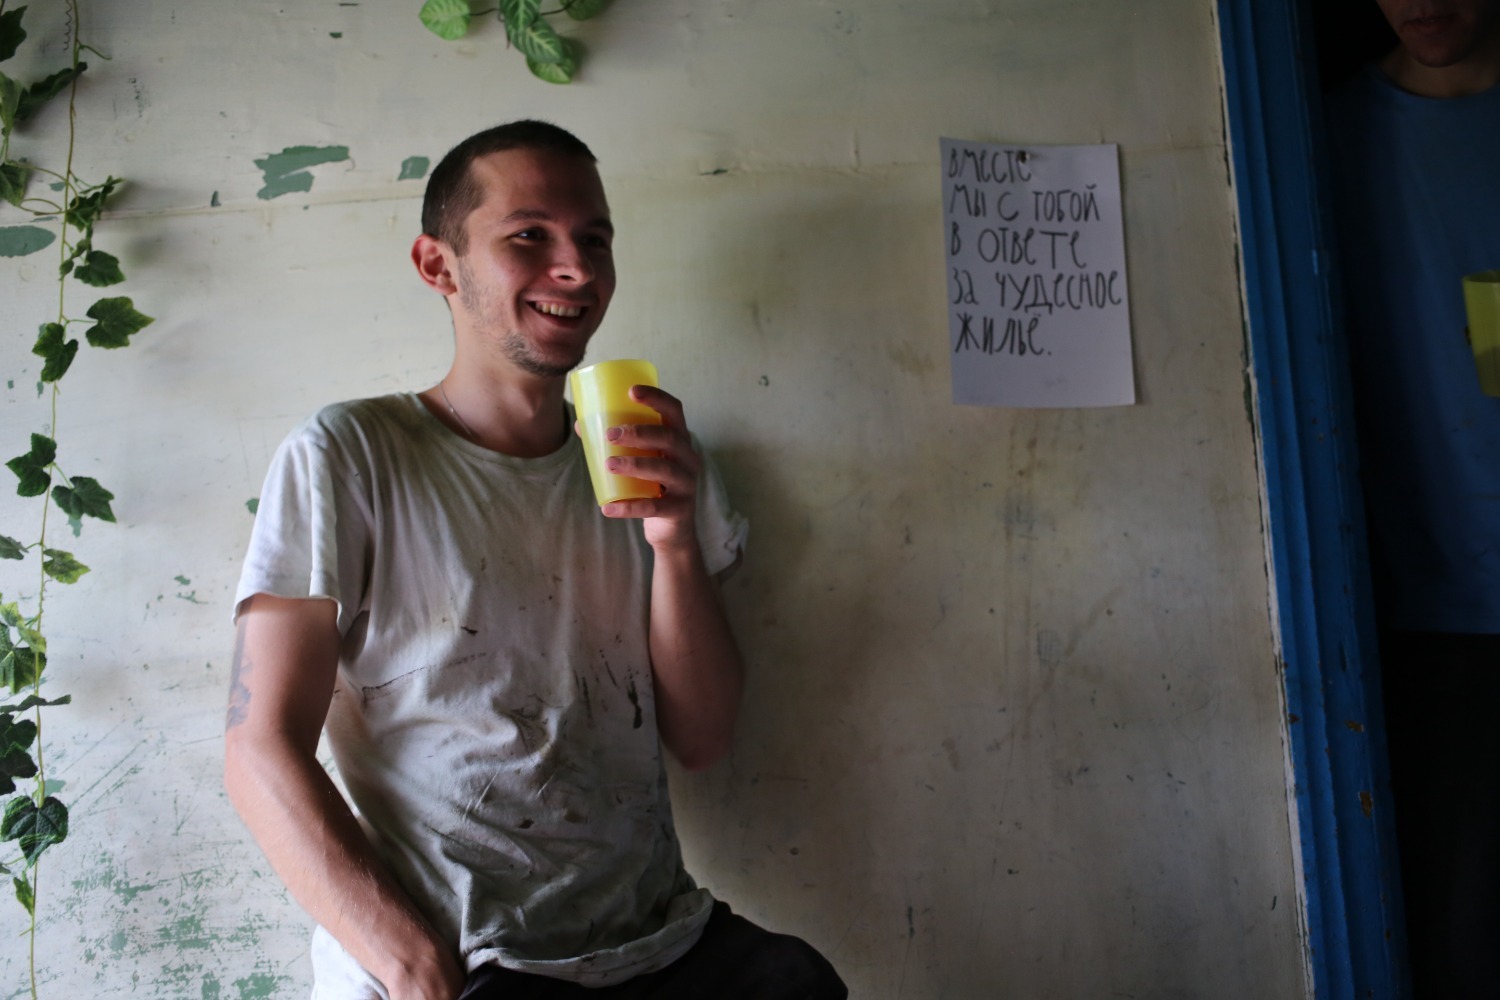 Вот так чувствует себя человек, который наконец-то нашел жильё во Владивостоке летом. Нервная улыбка и трясущиеся руки со стаканом.